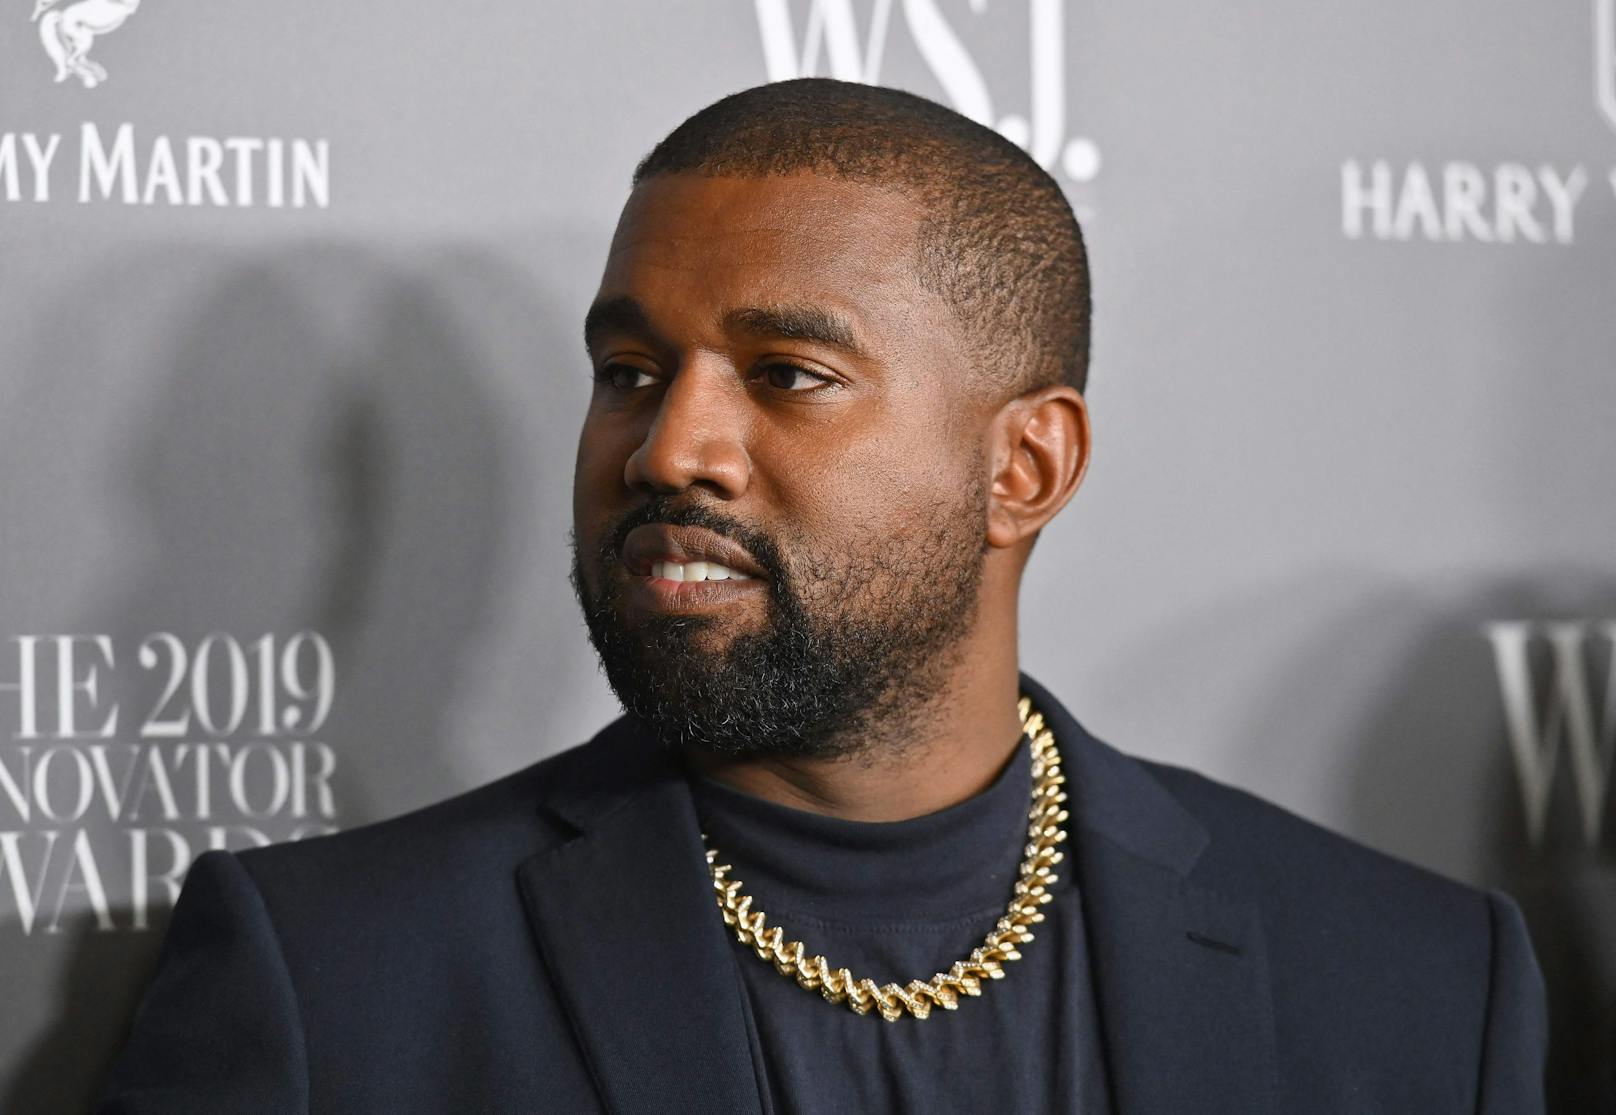 Rausgekickt – Kanye West wurde aus Geschäft eskortiert